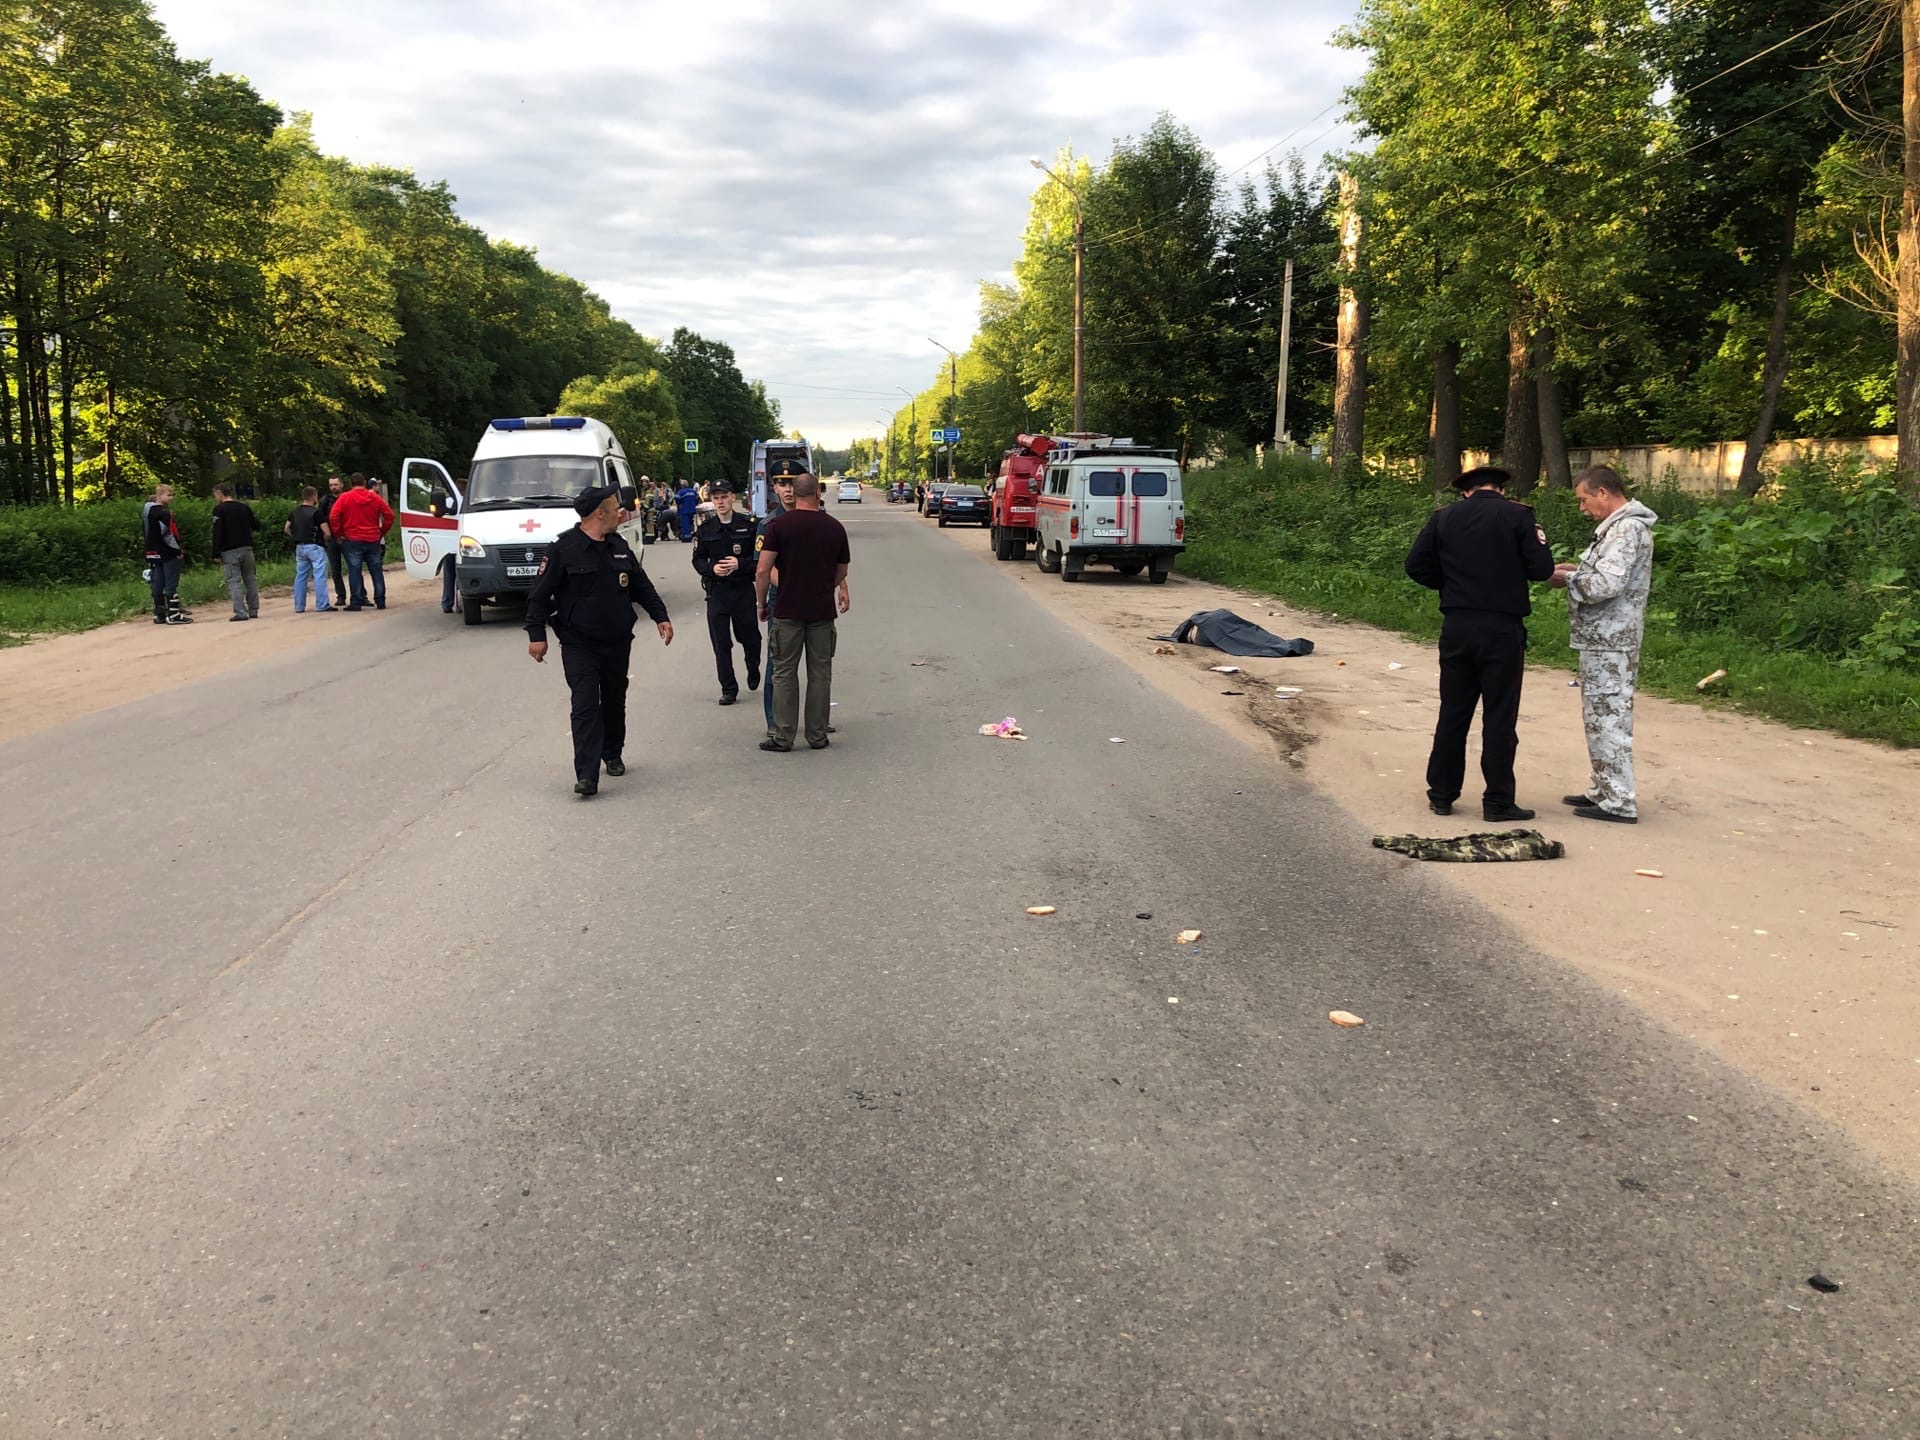 Мотоцикл насмерть сбил пешехода в Торжке - еще два человека пострадали. Фото 18+